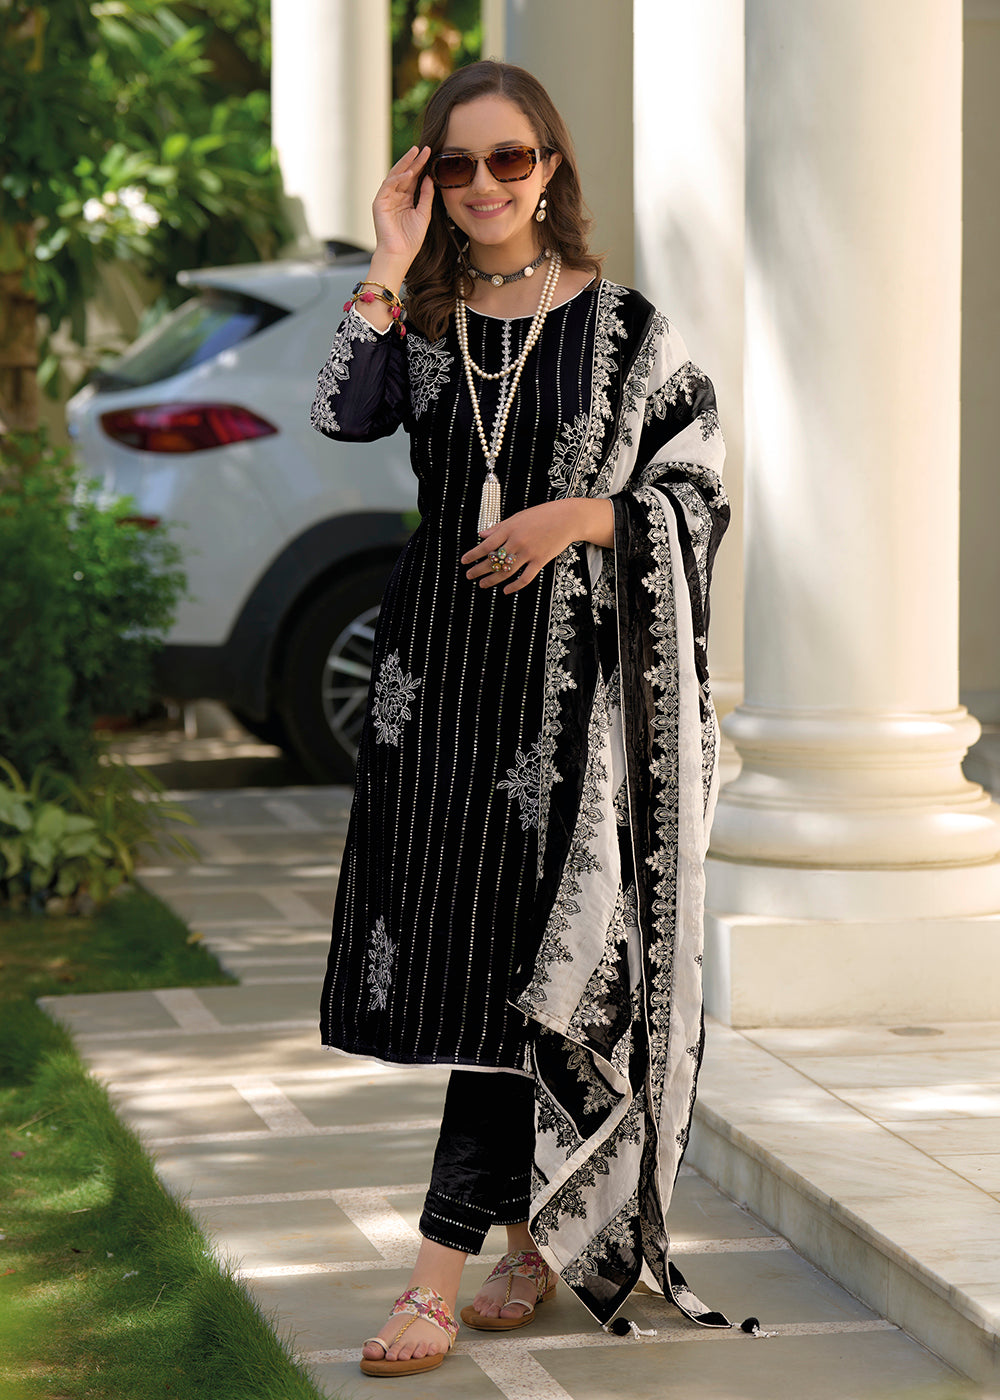 Buy Stylish Black Salwar Suits - Online Black Salwar Kameez Store